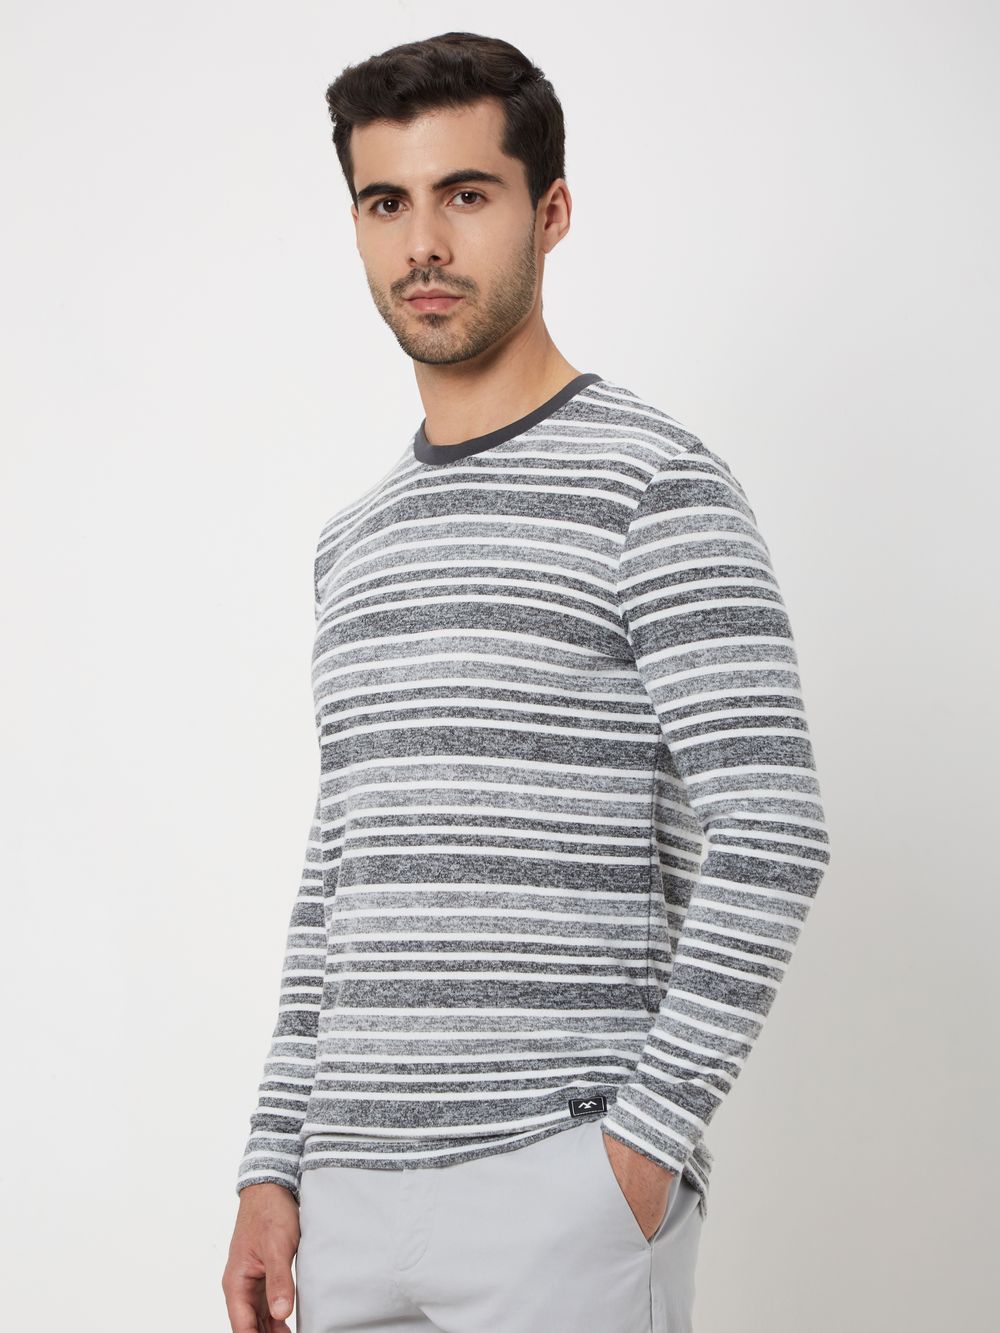 Grey & White Stripe Jersey T-Shirt